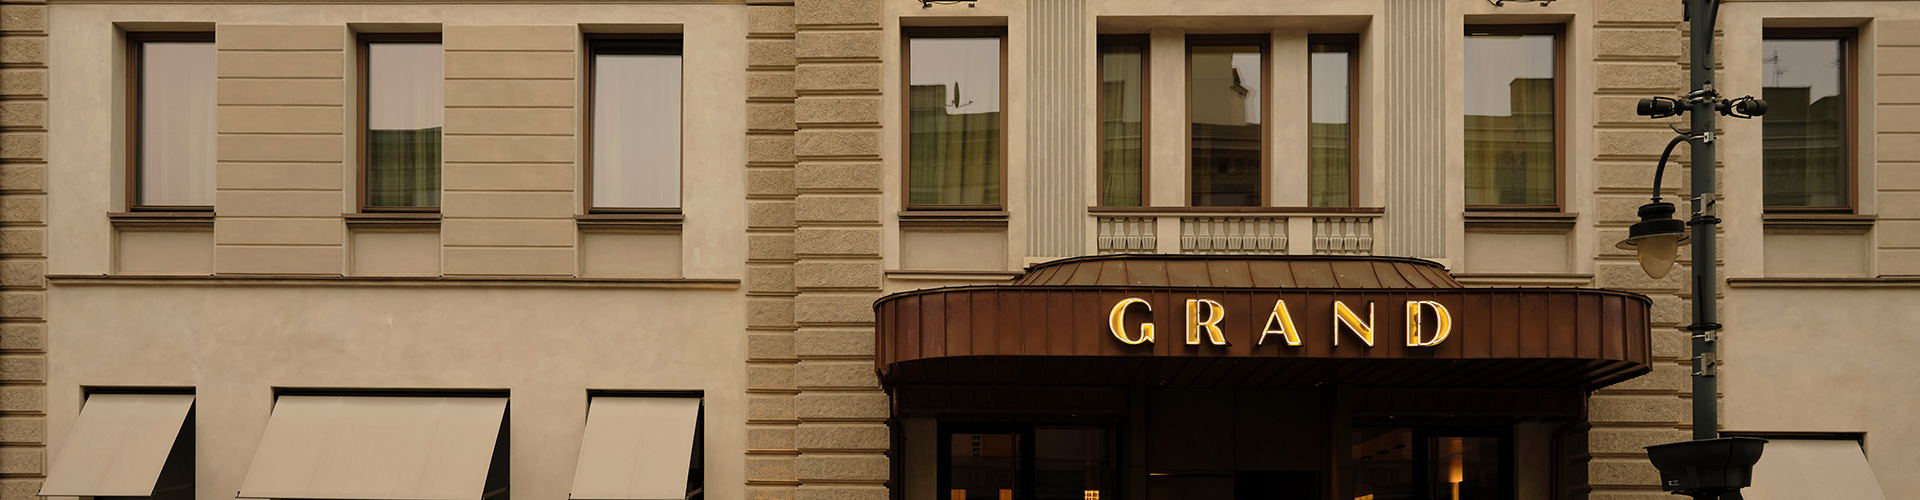 Hotel-Grand